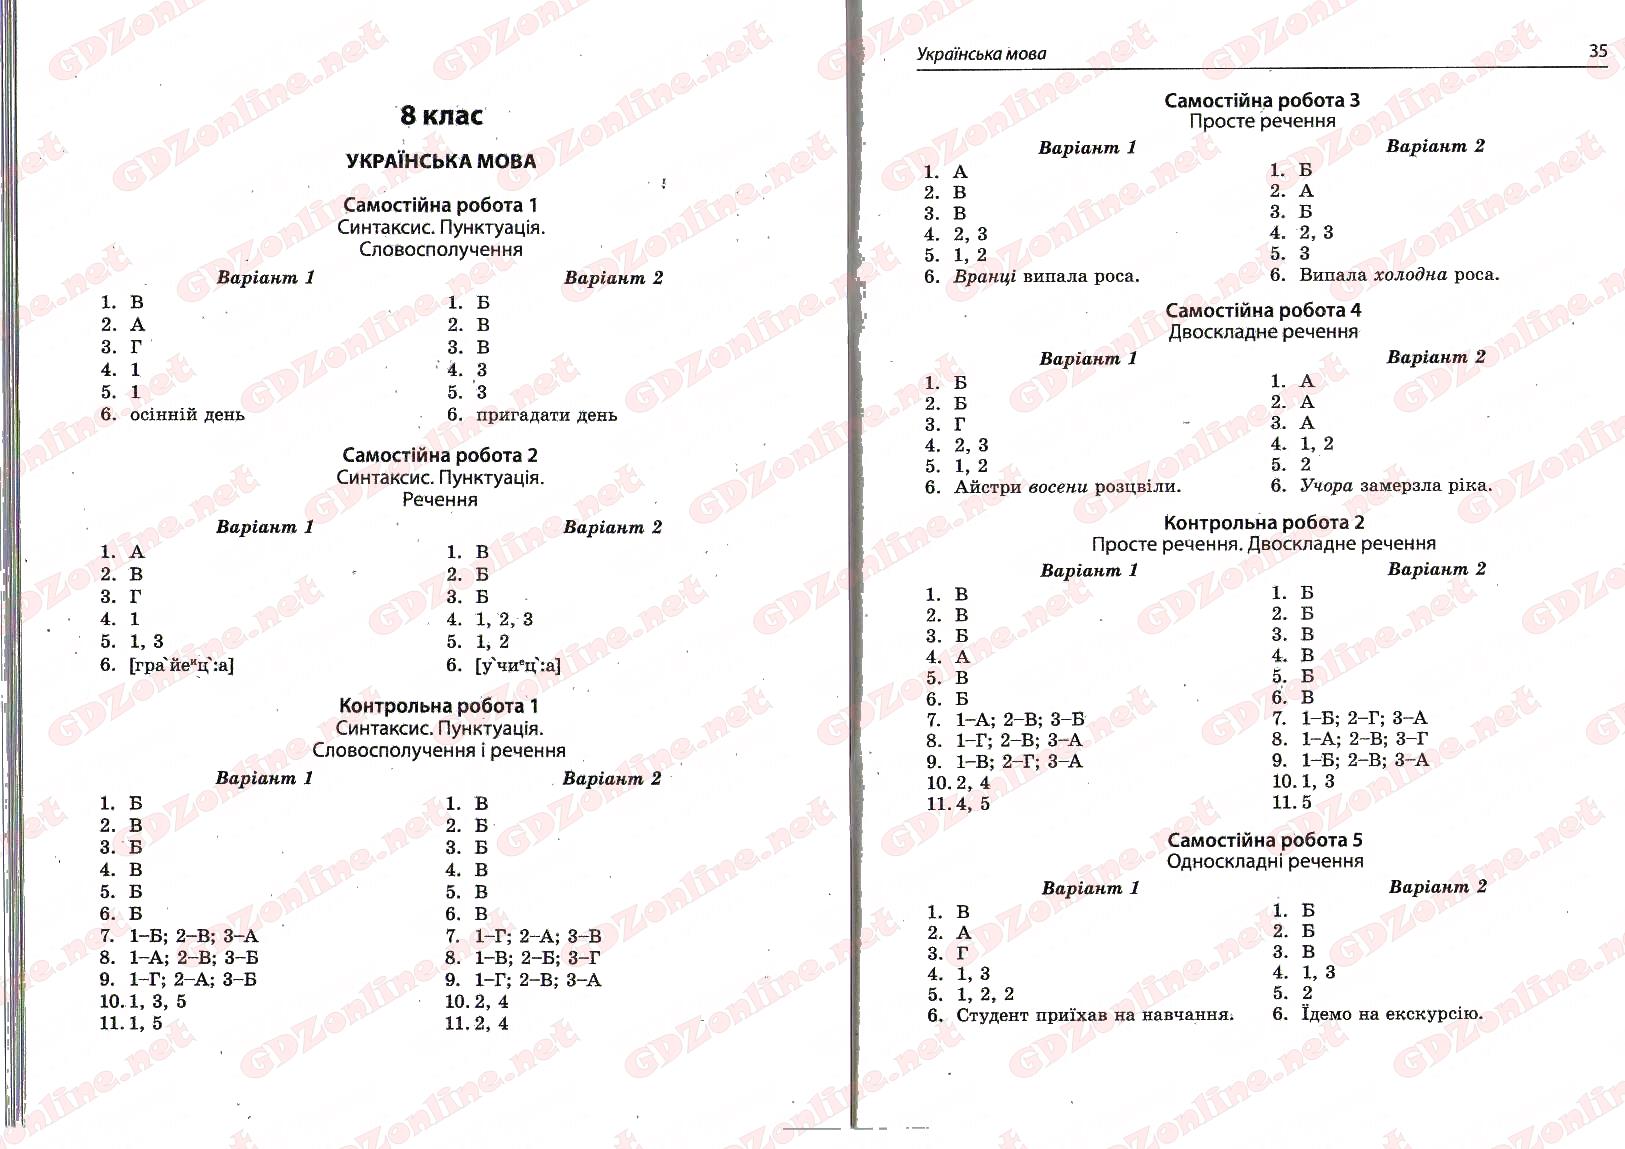 Гдз 8 класс украинская мова онлайн